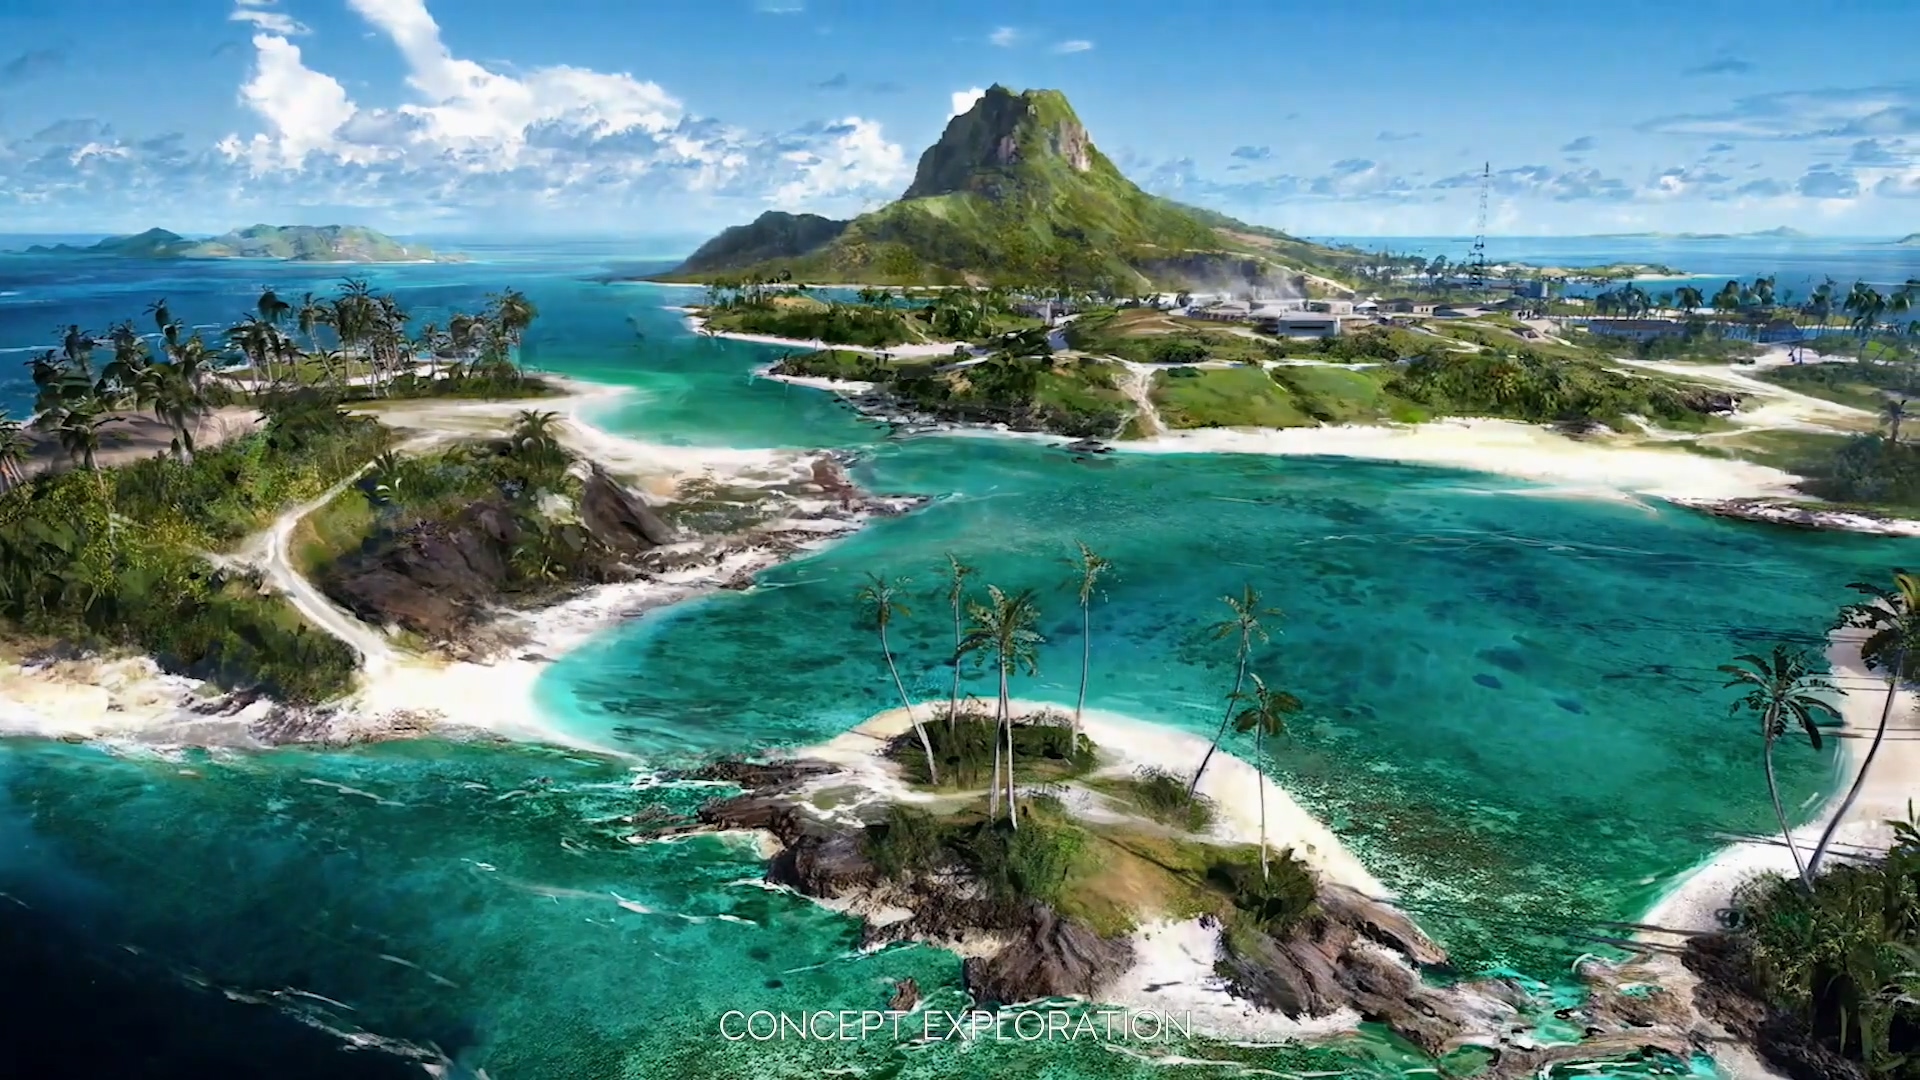 E3：《战地5》更新计划 太平洋战场将有3个新地图